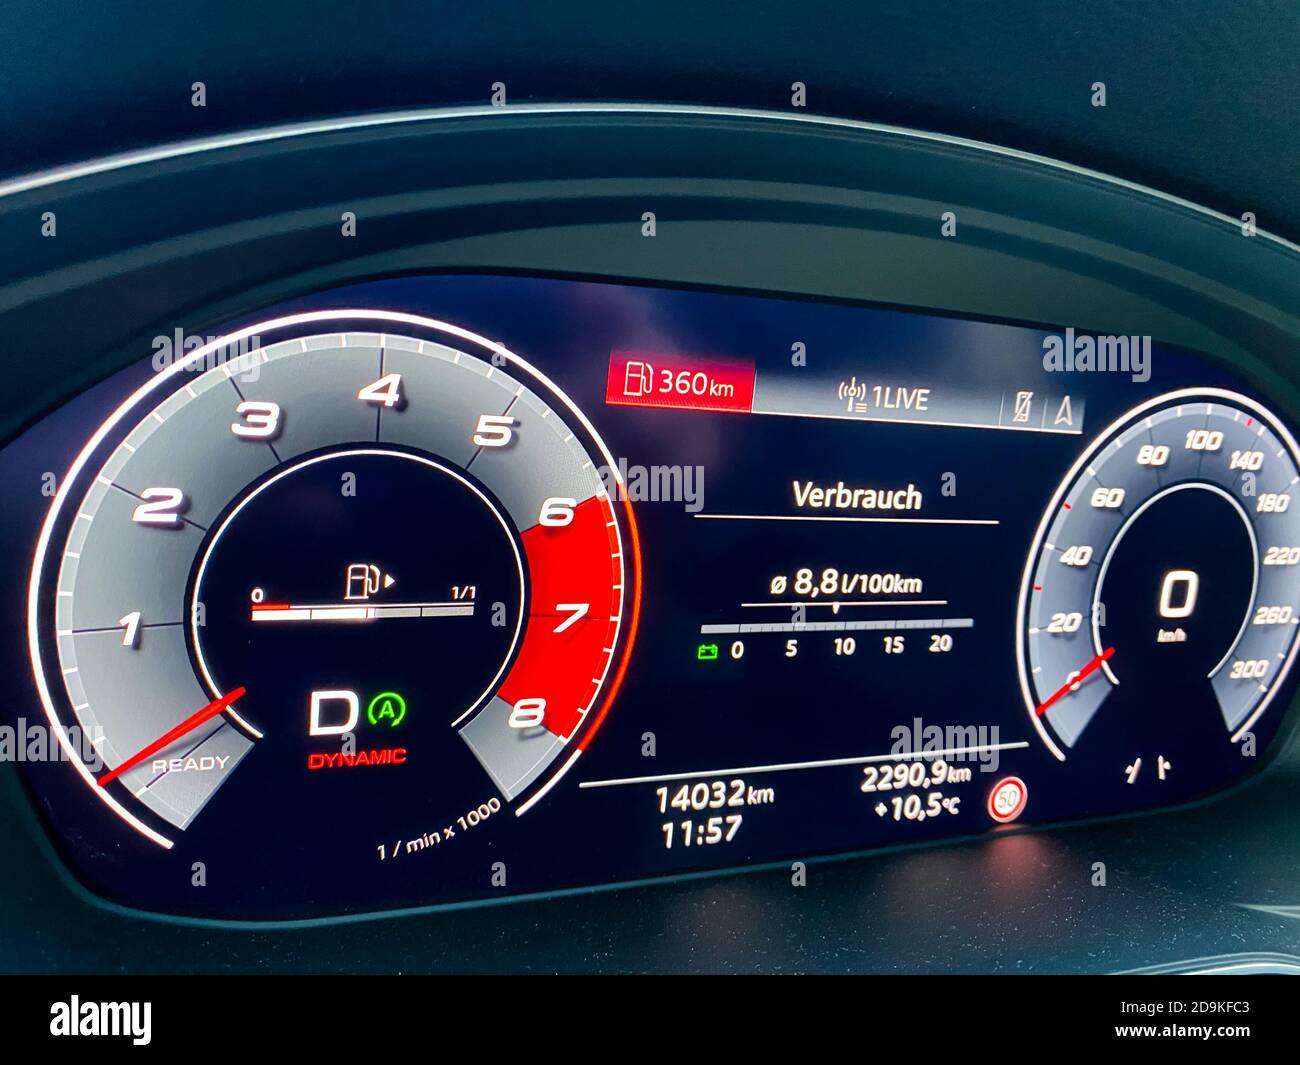 Viersen, Allemagne - novembre 4. 2020 : gros plan de l'écran de commande du véhicule Audi A5 éclairé Banque D'Images